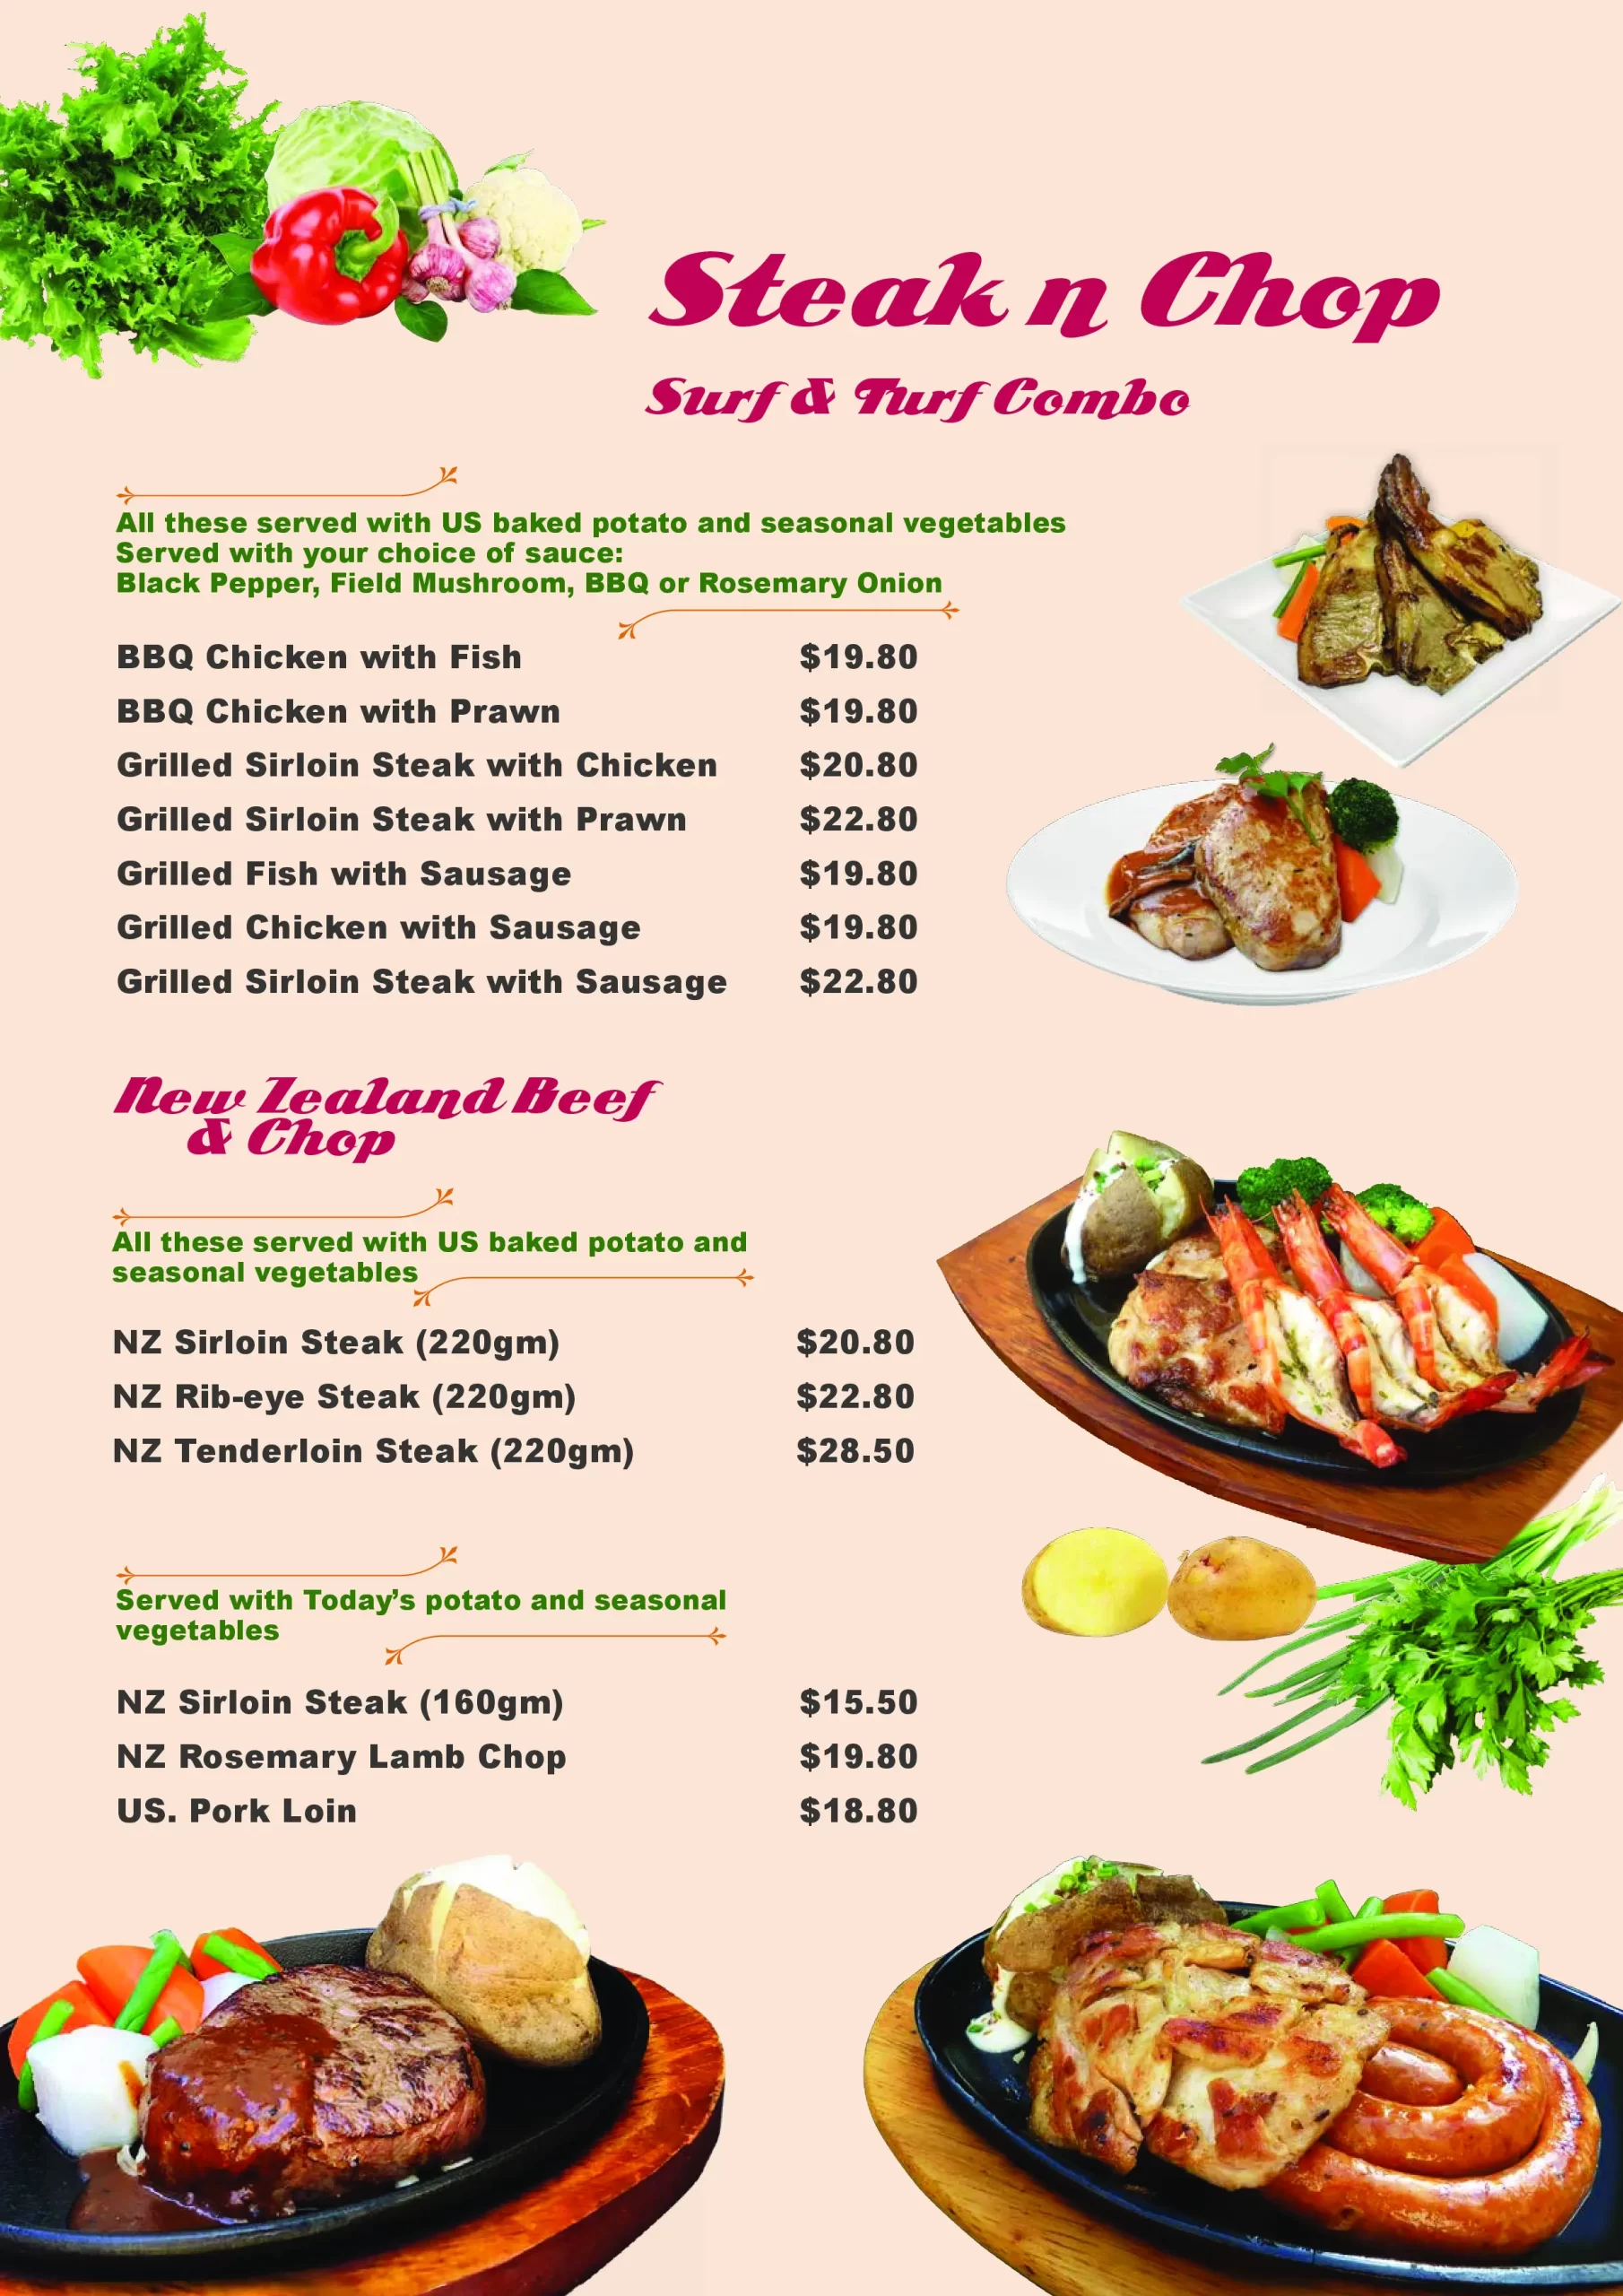 Tim’s Restaurant Singapore steak chop chicken, bbq chicken Menu & Price List 2022